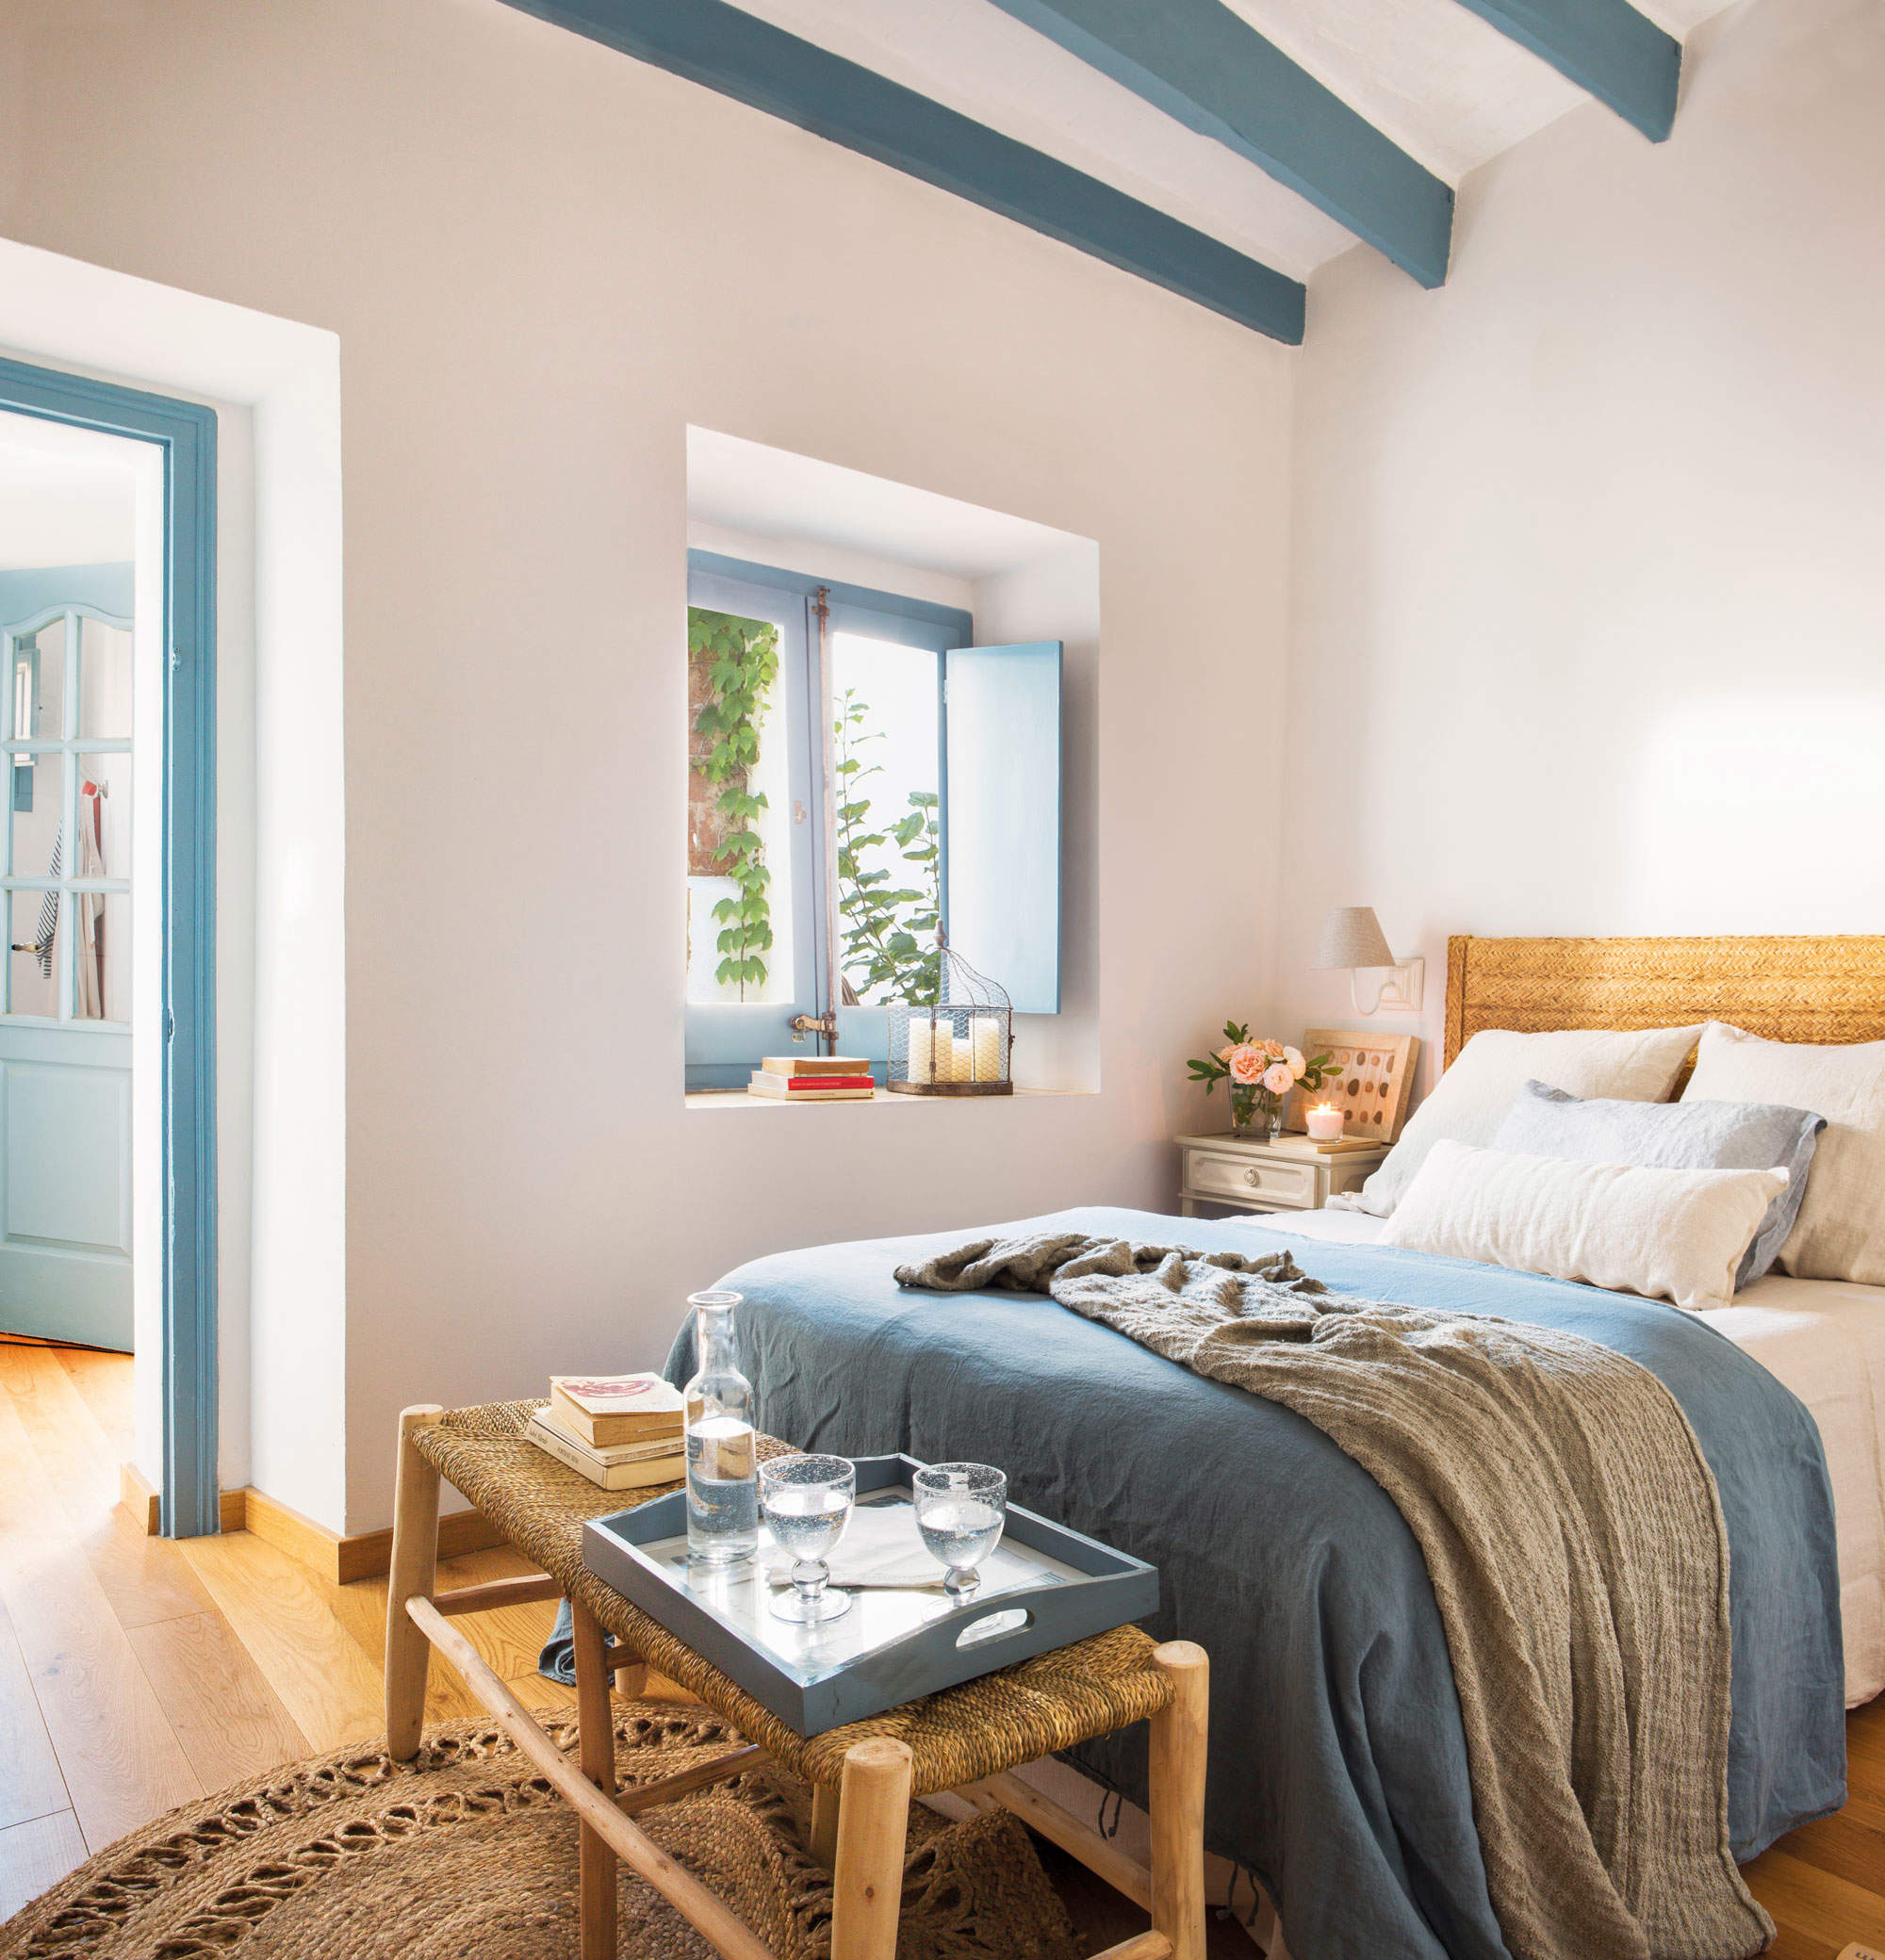 Decoración de verano dormitorio con vigas y porticones en azul.